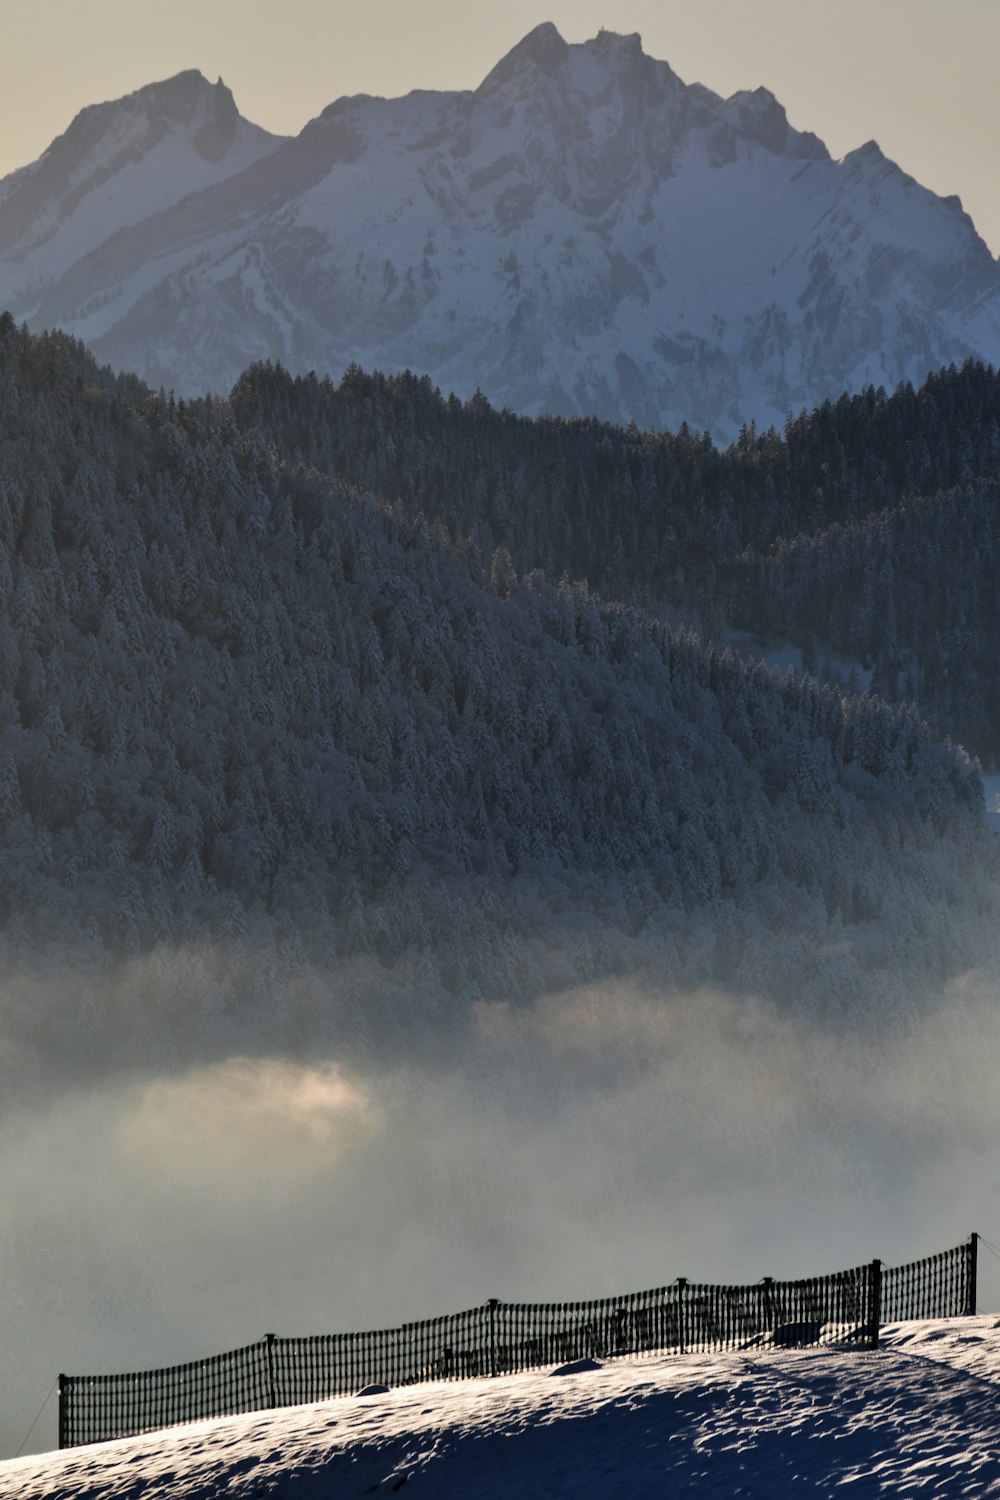 una persona montando una tabla de snowboard en la cima de una ladera cubierta de nieve